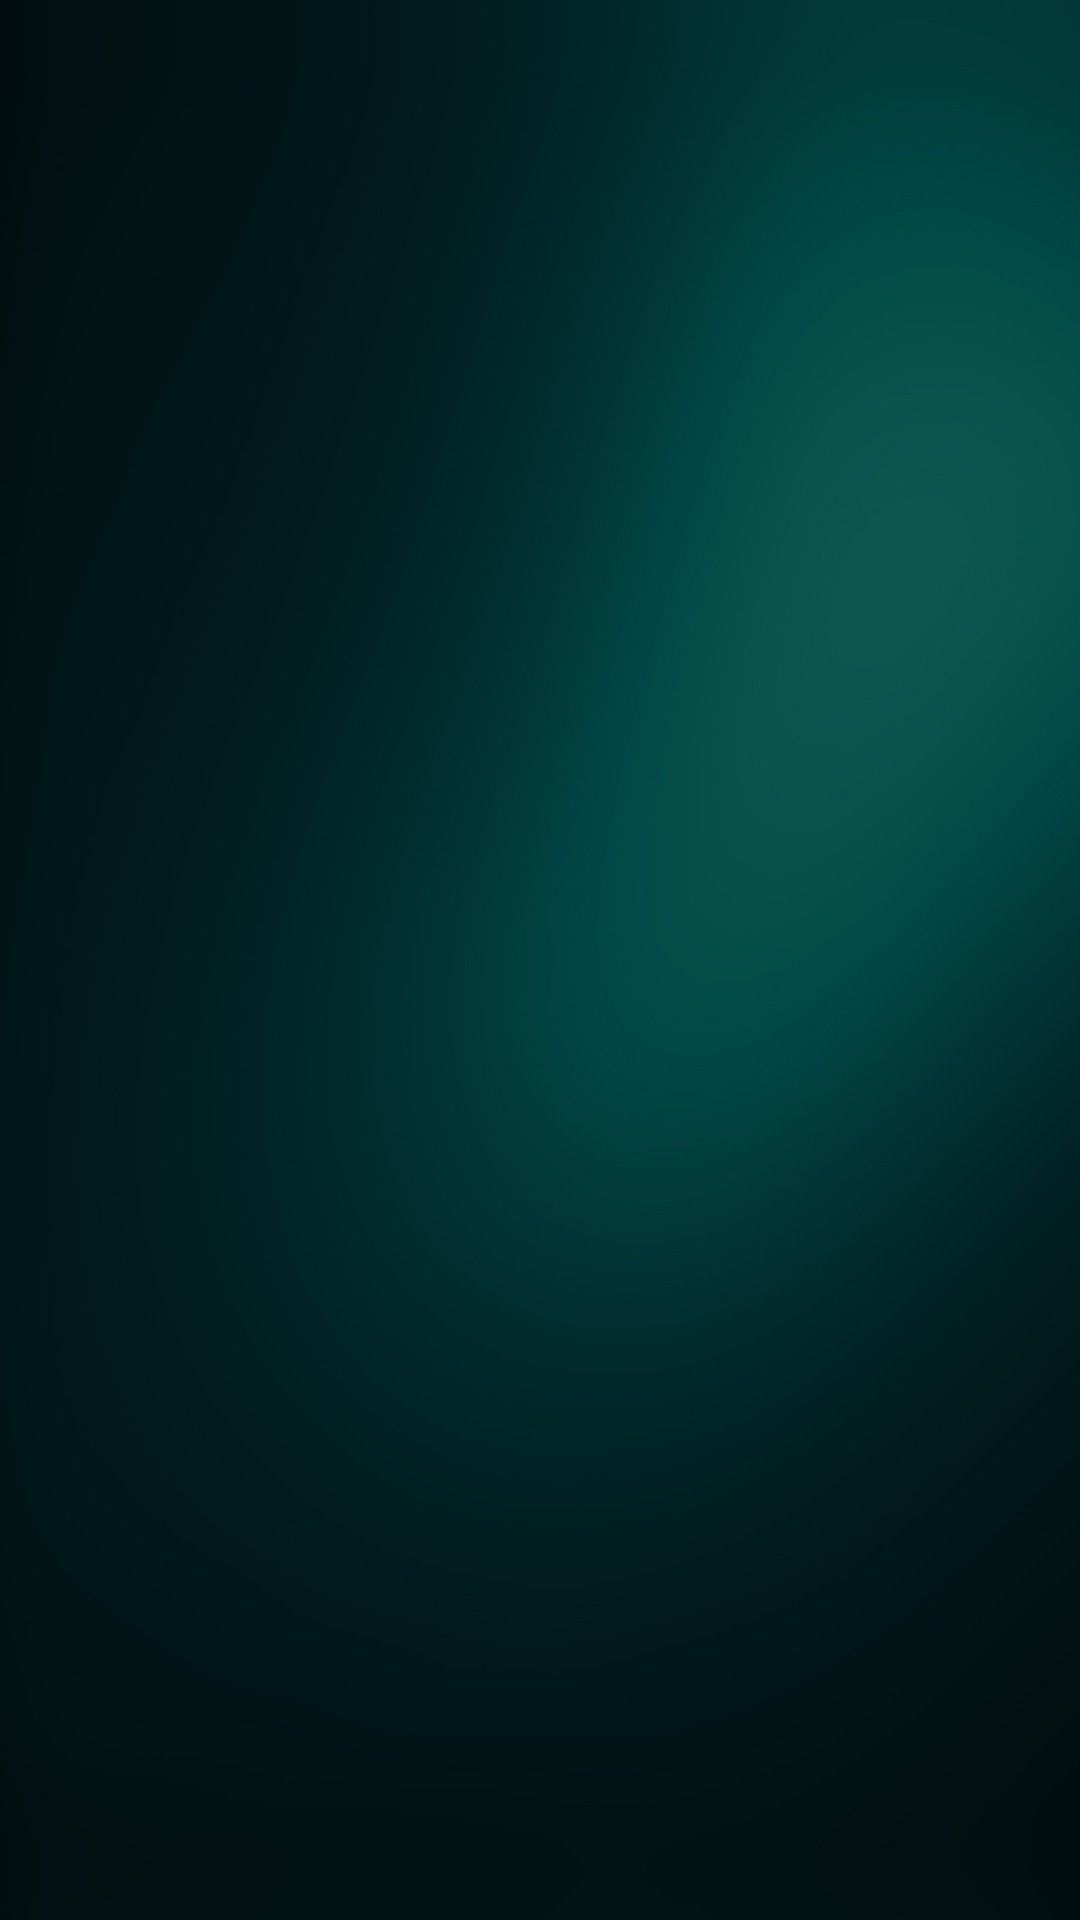 Fondos de pantalla de iPhone verde oscuro | Fondo de pantalla azul! El | Pintura a juego